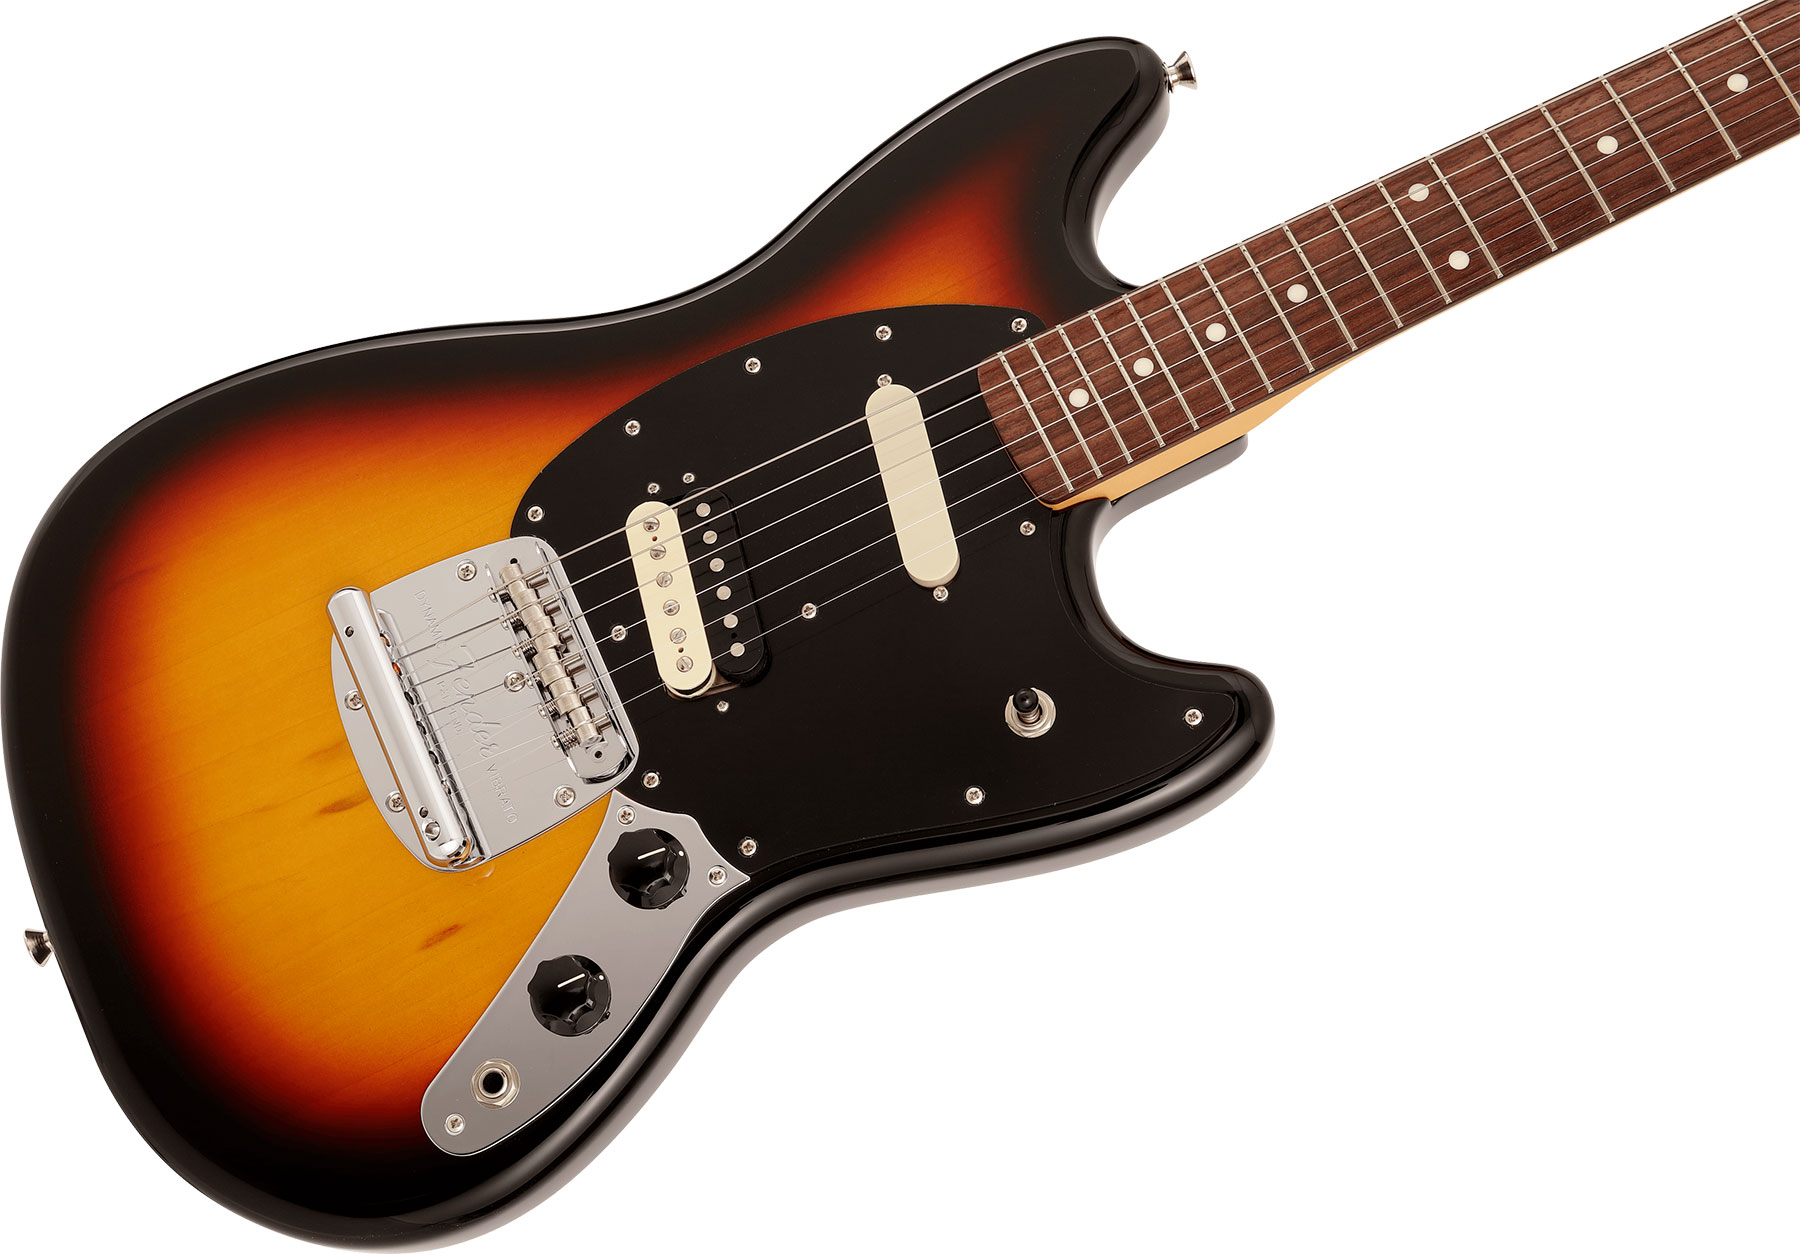 Fender Mustang Reverse Headstock Traditional Ltd Jap Hs Trem Rw - 3-color Sunburst - Str shape electric guitar - Variation 2